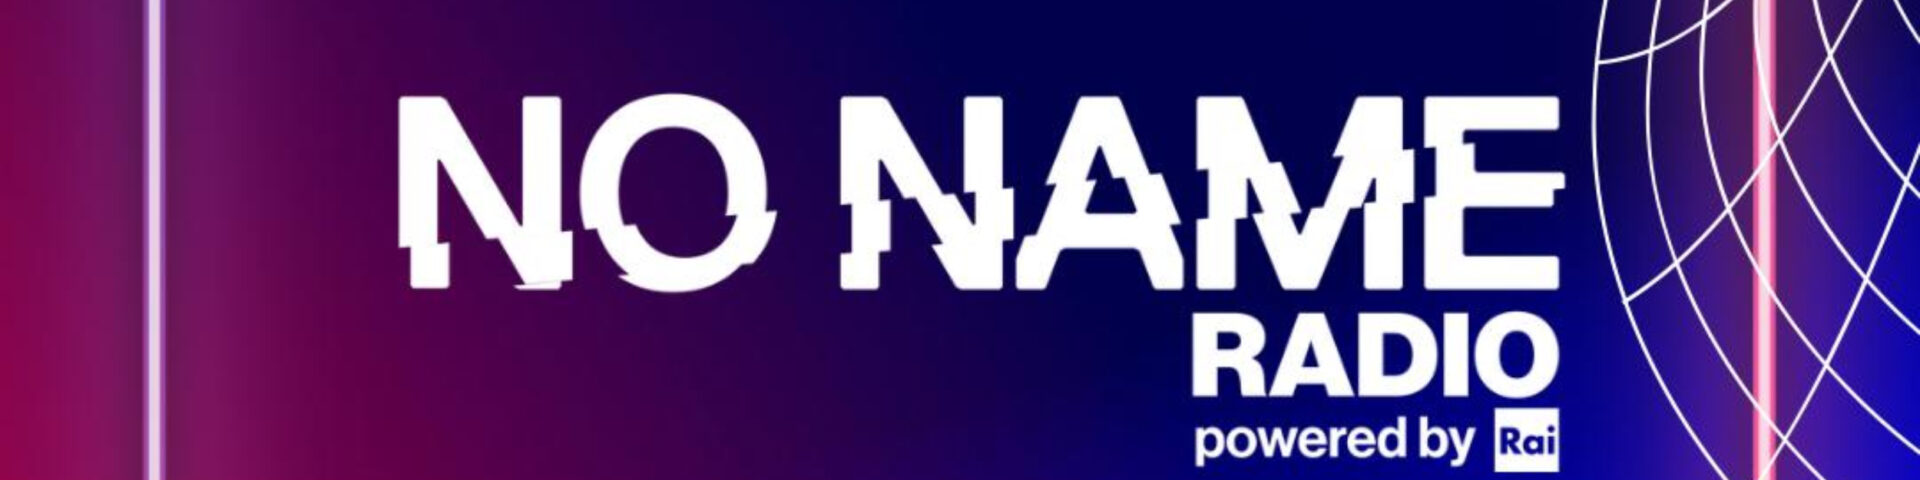 No Name Radio: il progetto Radio Rai dedicato ai giovani